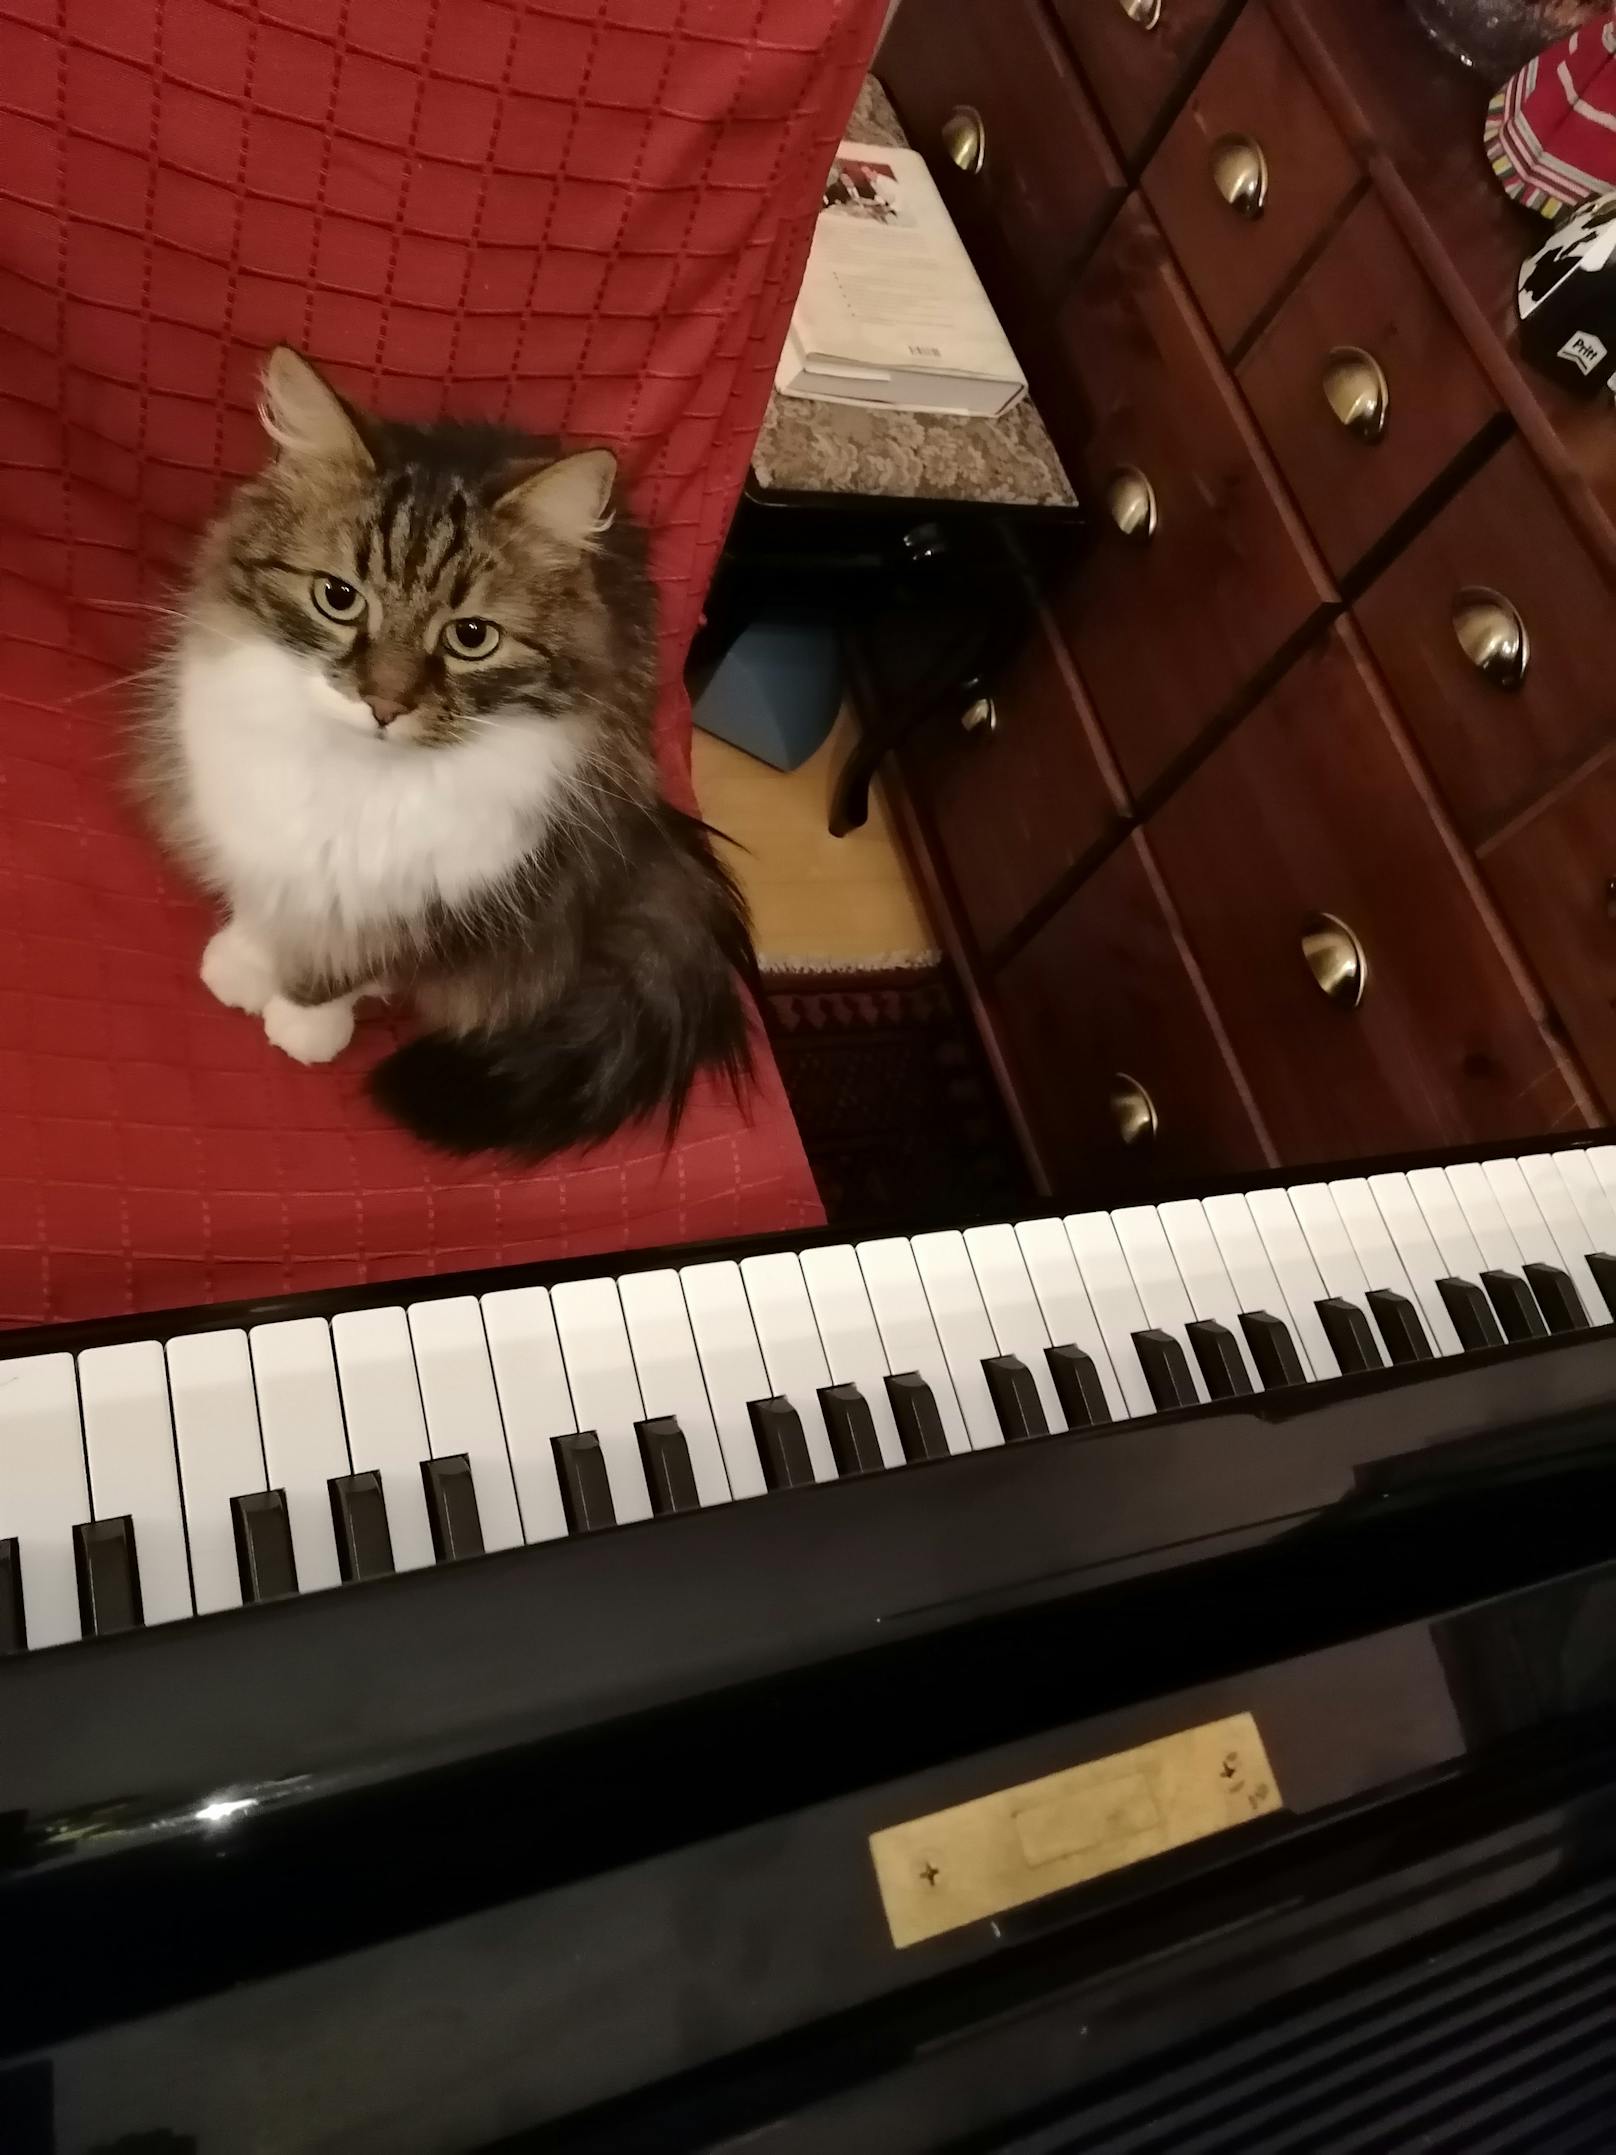  "Mein süßer Kater Socke hilft mir immer beim Klavier üben und online Unterrichten!"